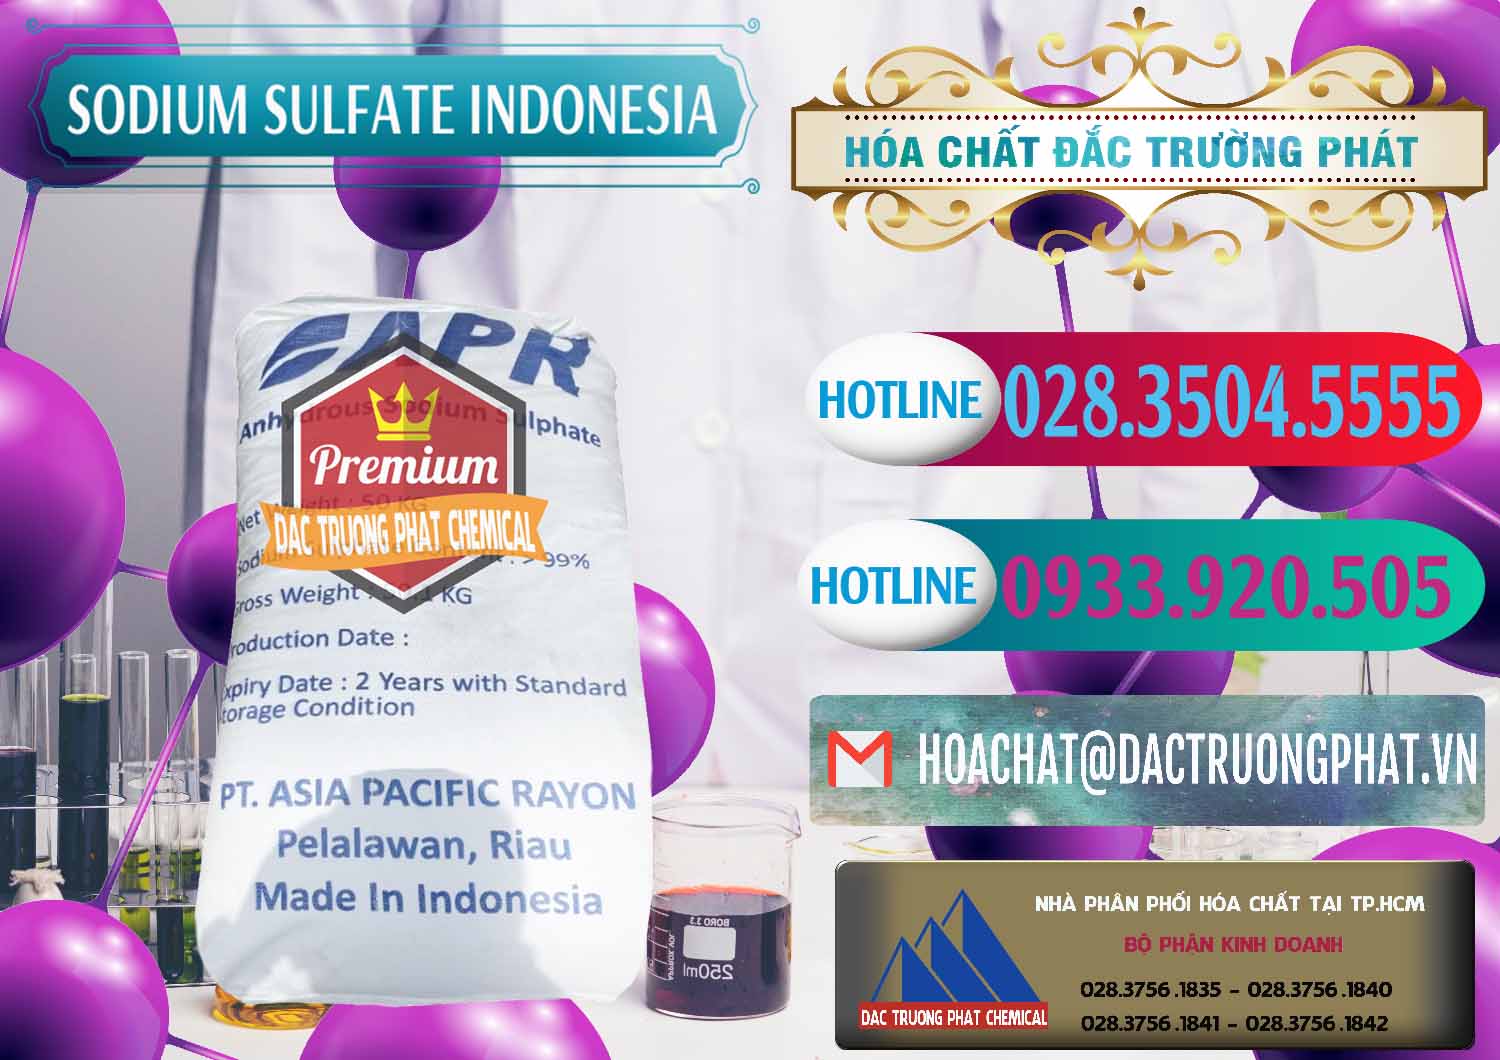 Công ty chuyên cung ứng & bán Sodium Sulphate - Muối Sunfat Na2SO4 APR Indonesia - 0460 - Cung cấp và kinh doanh hóa chất tại TP.HCM - truongphat.vn